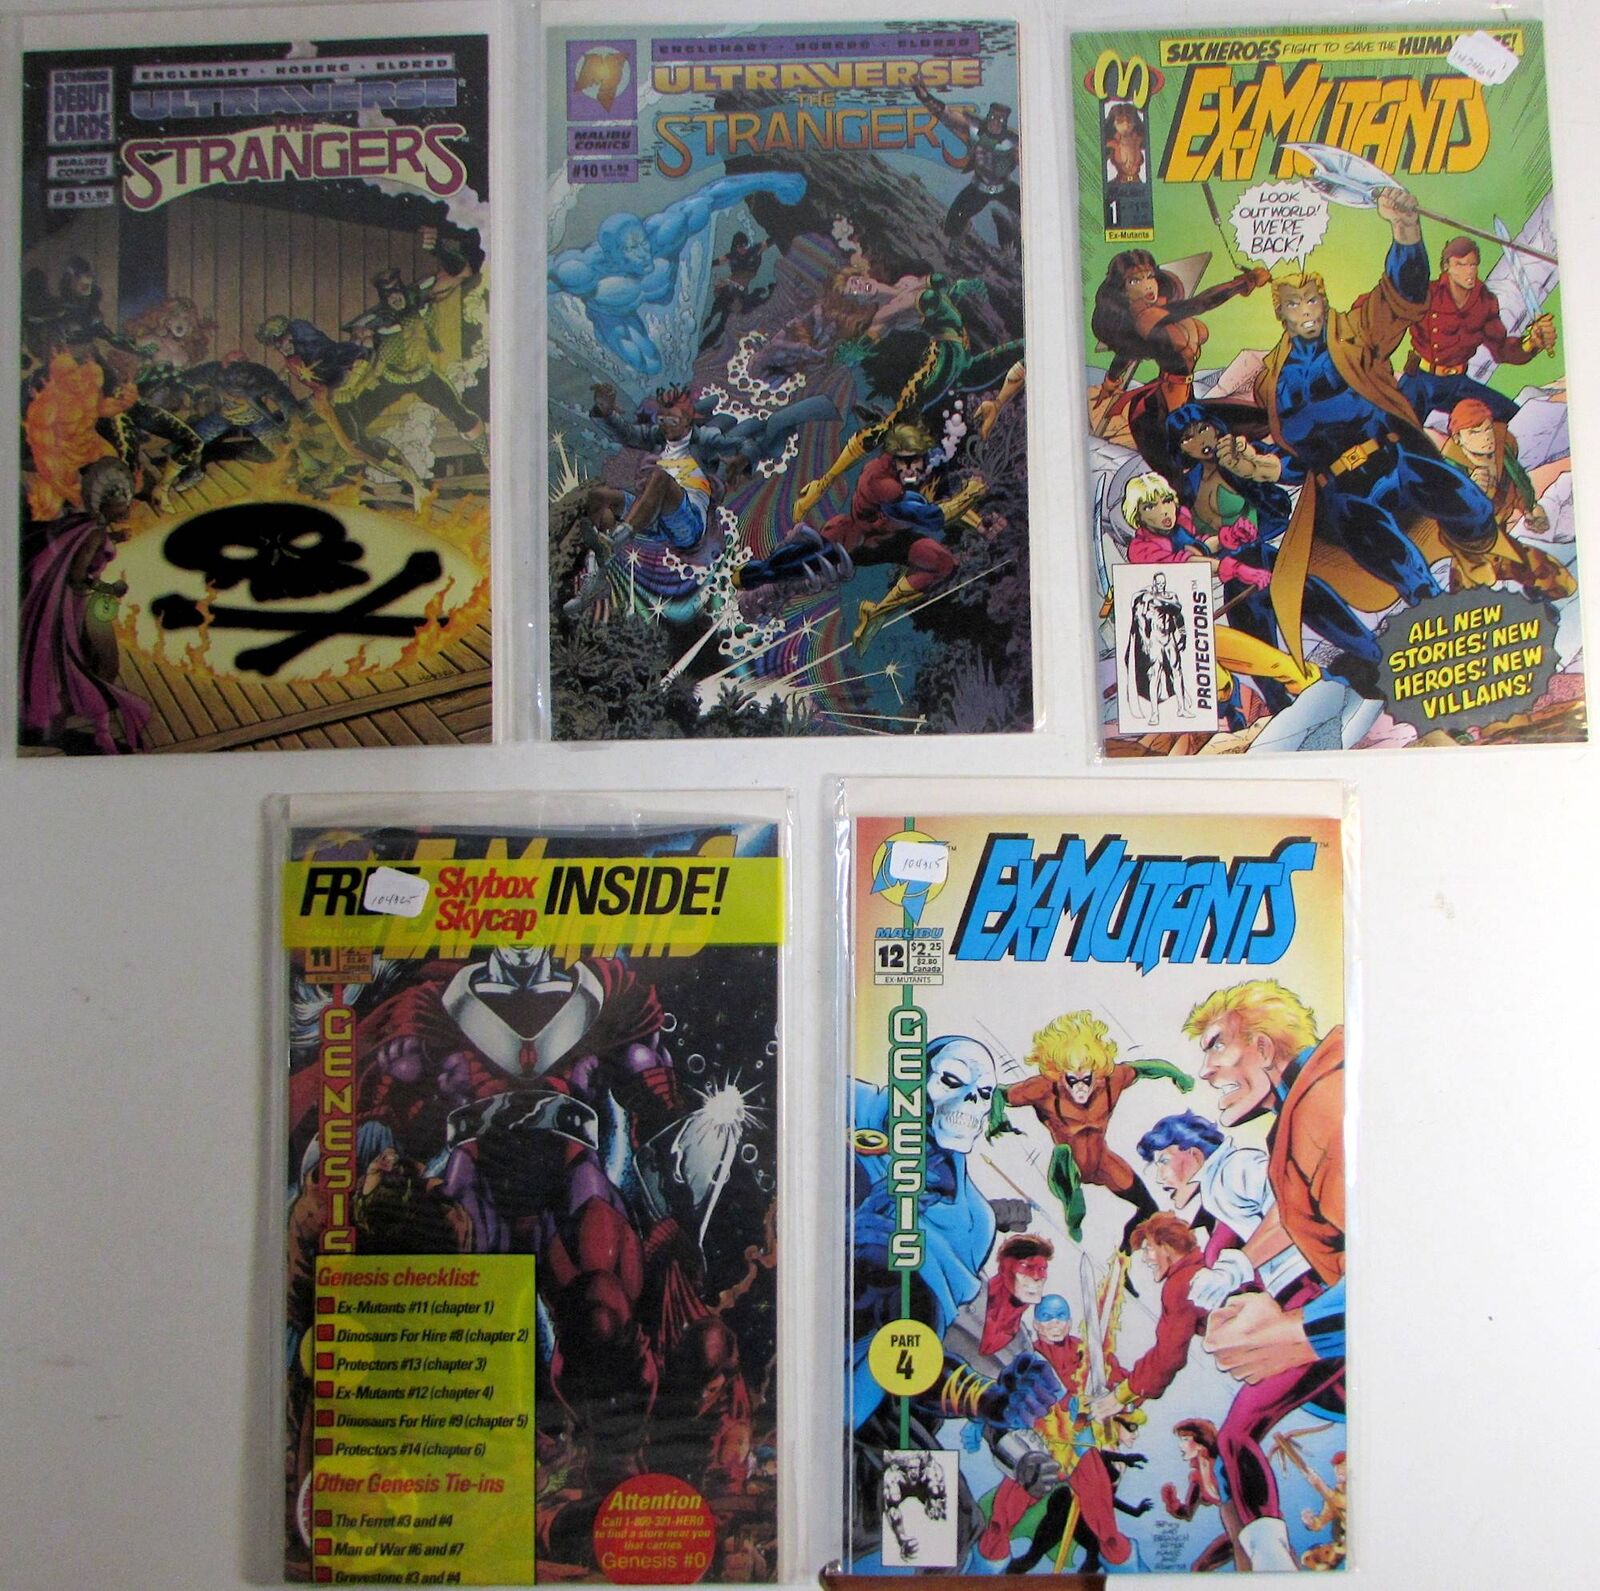 1994 Mixed Lot of 5 #Strangers 9,10,Ex-Mutants 1,11,12 Malibu 1st Print Comics